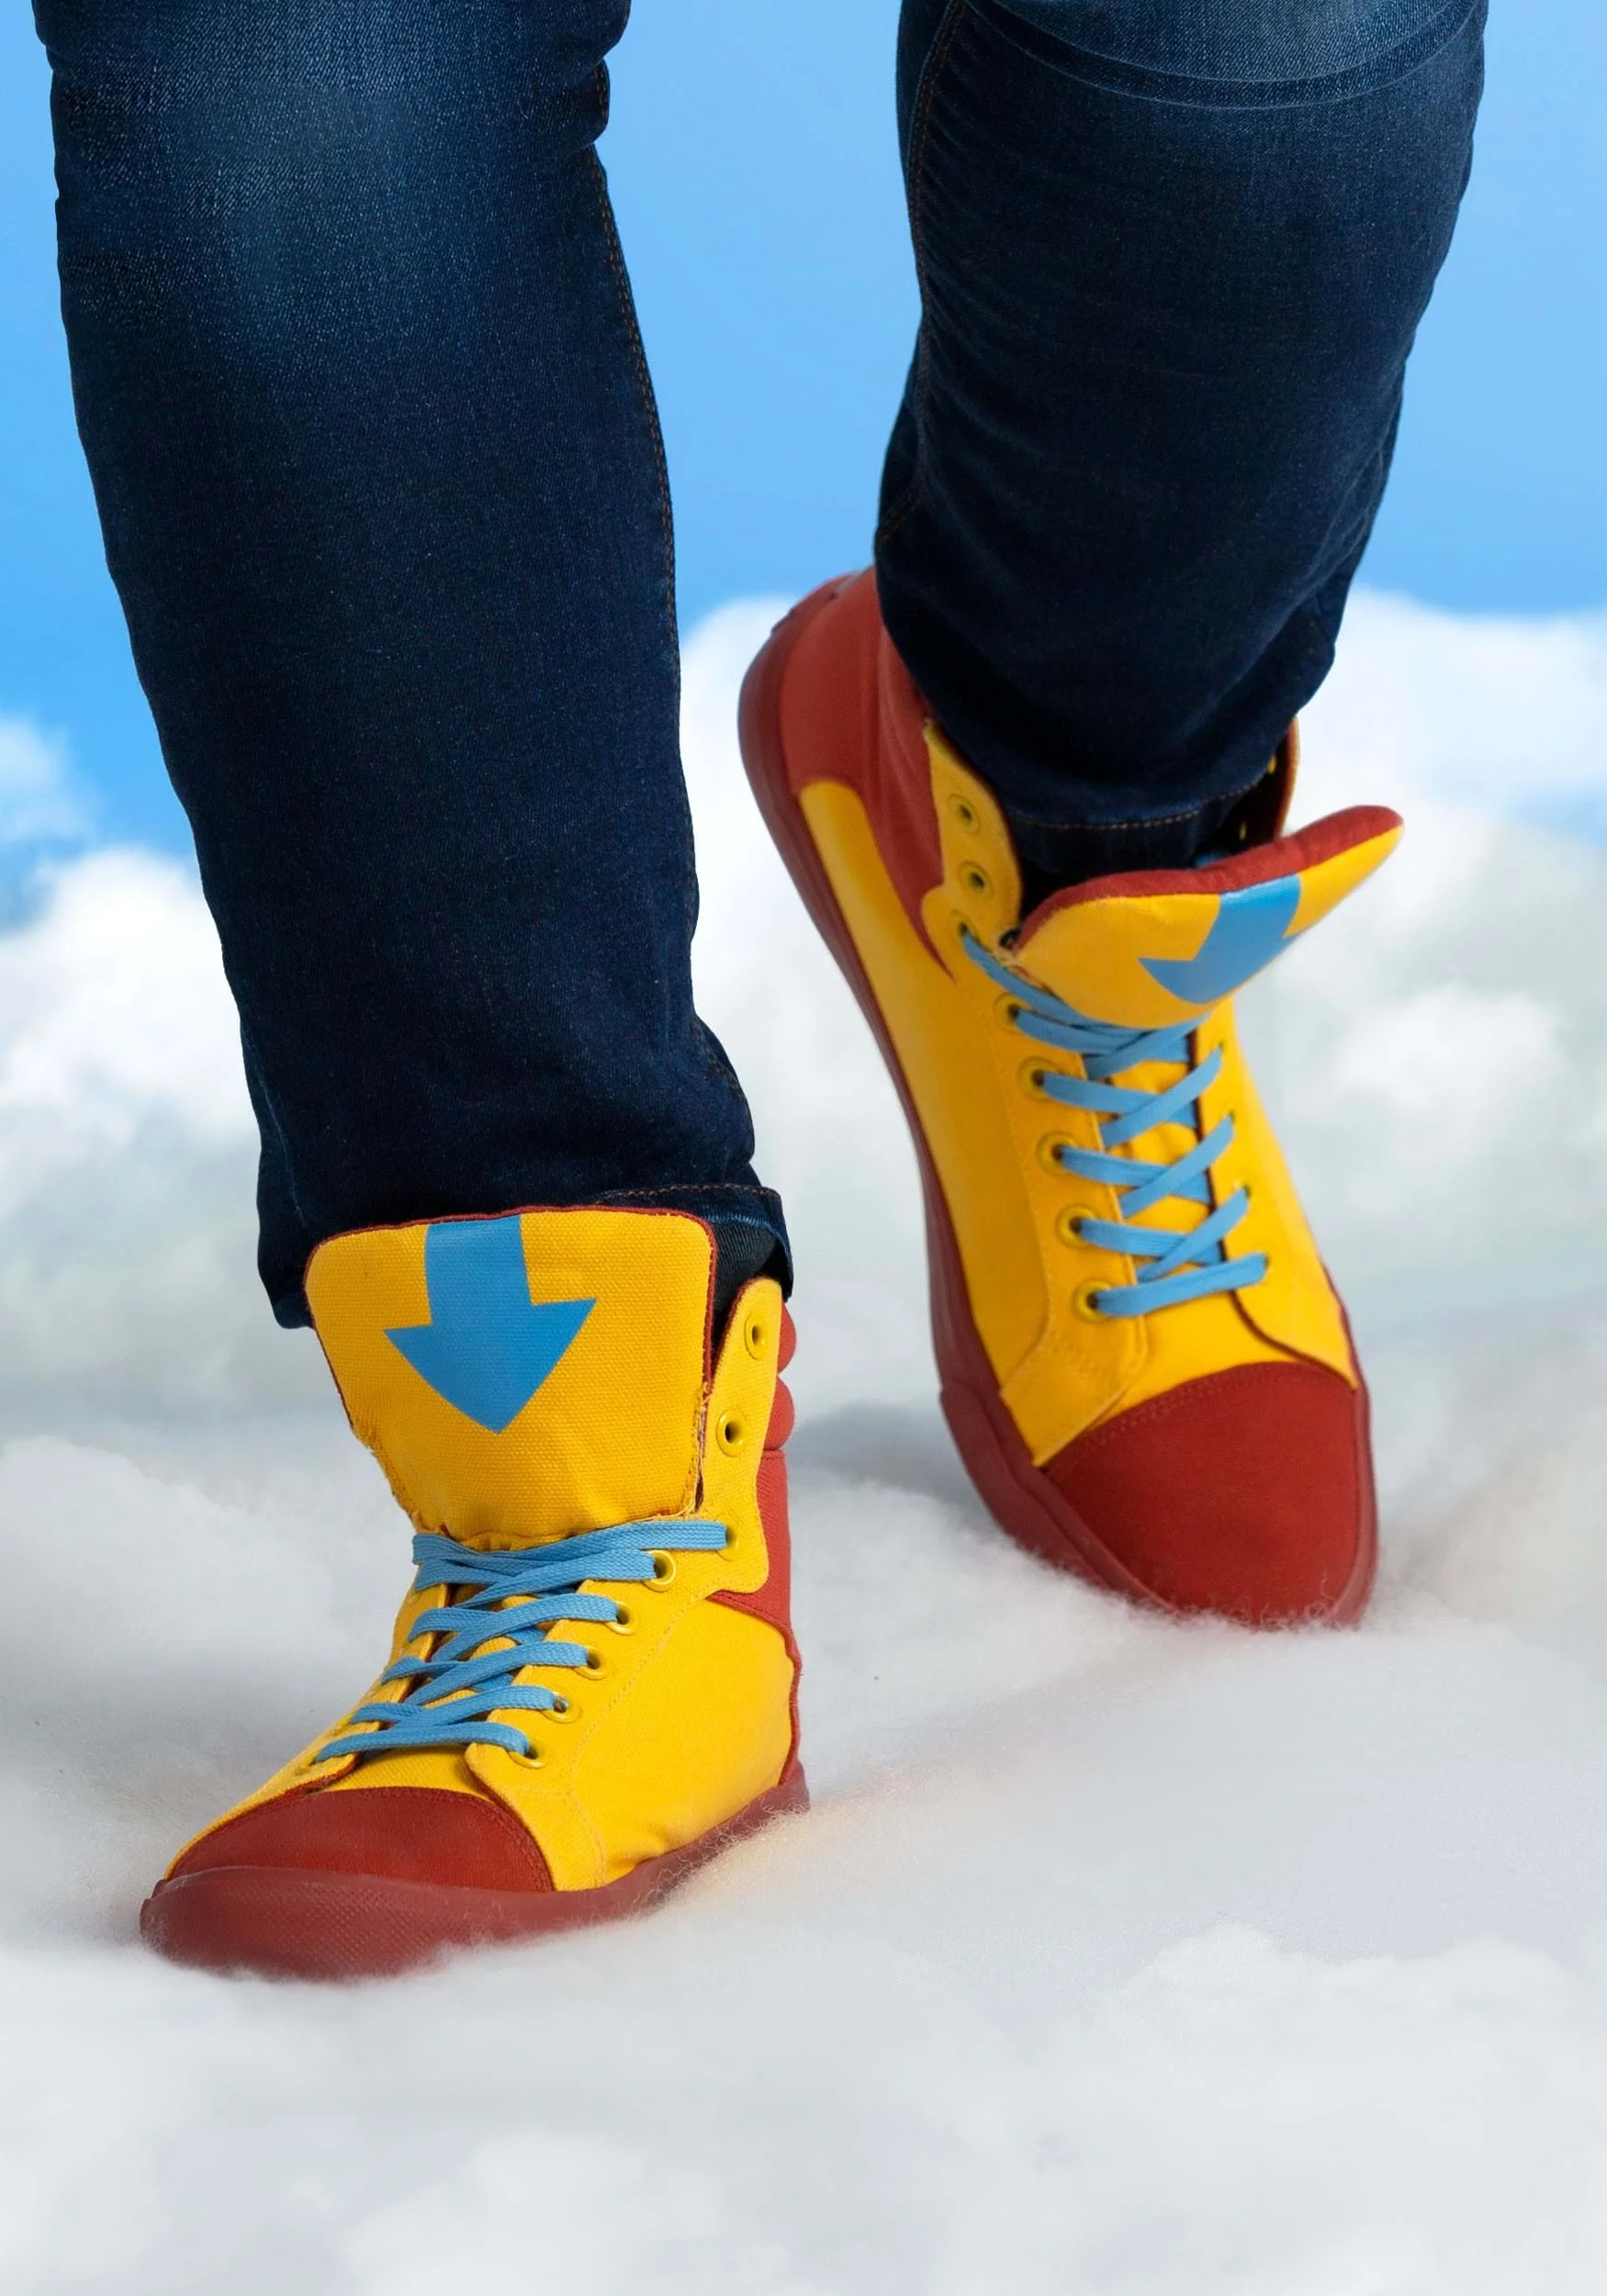 Вышли кроссовки в стиле аватара Аанга из мультсериала Nickelodeon - фото 1